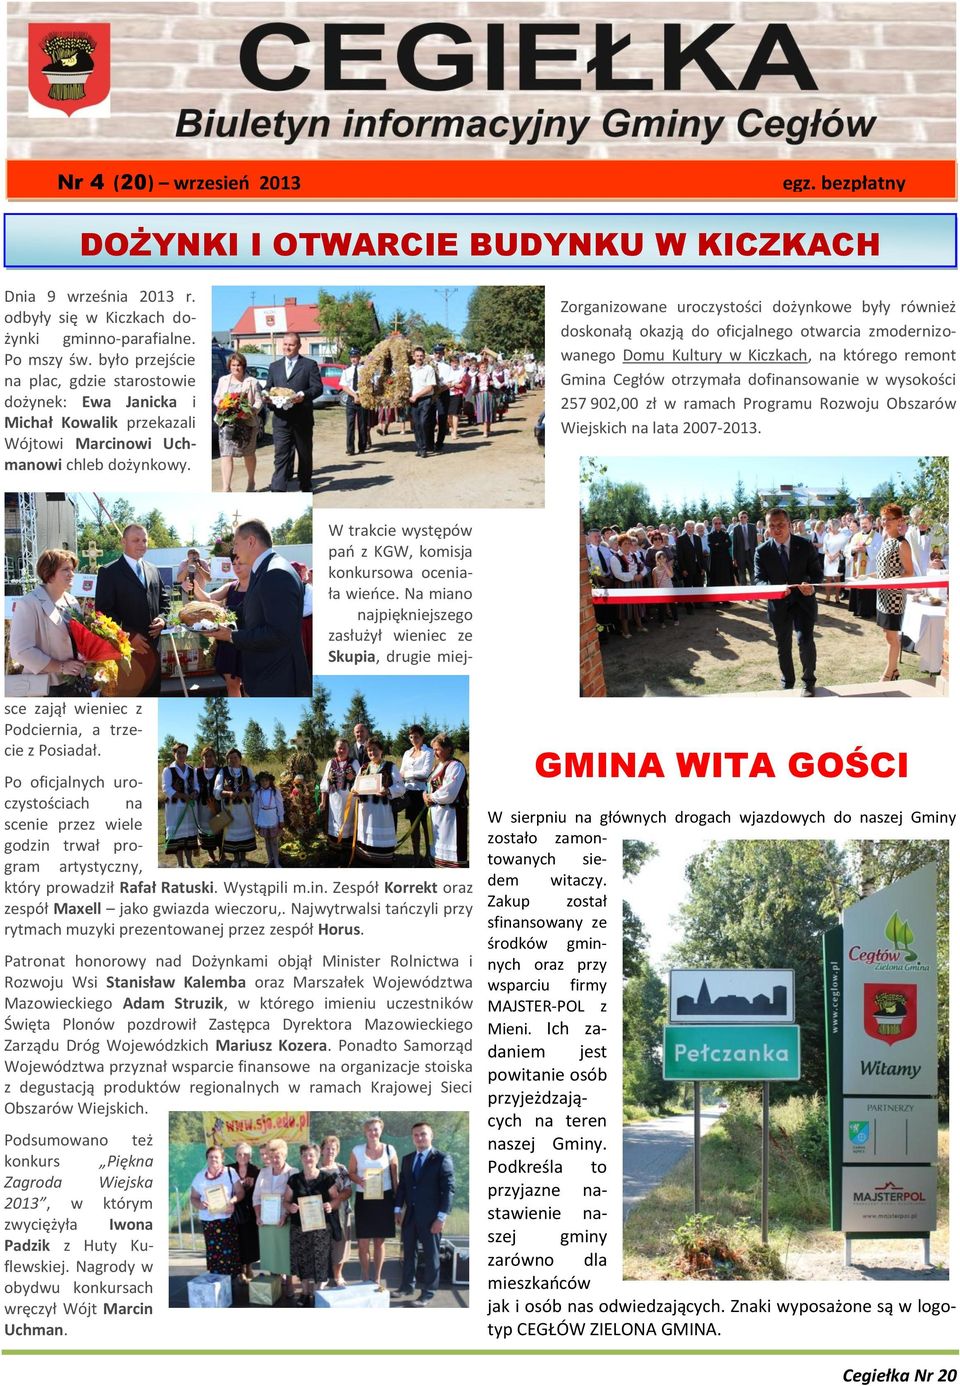 Zorganizowane uroczystości dożynkowe były również doskonałą okazją do oficjalnego otwarcia zmodernizowanego Domu Kultury w Kiczkach, na którego remont Gmina Cegłów otrzymała dofinansowanie w